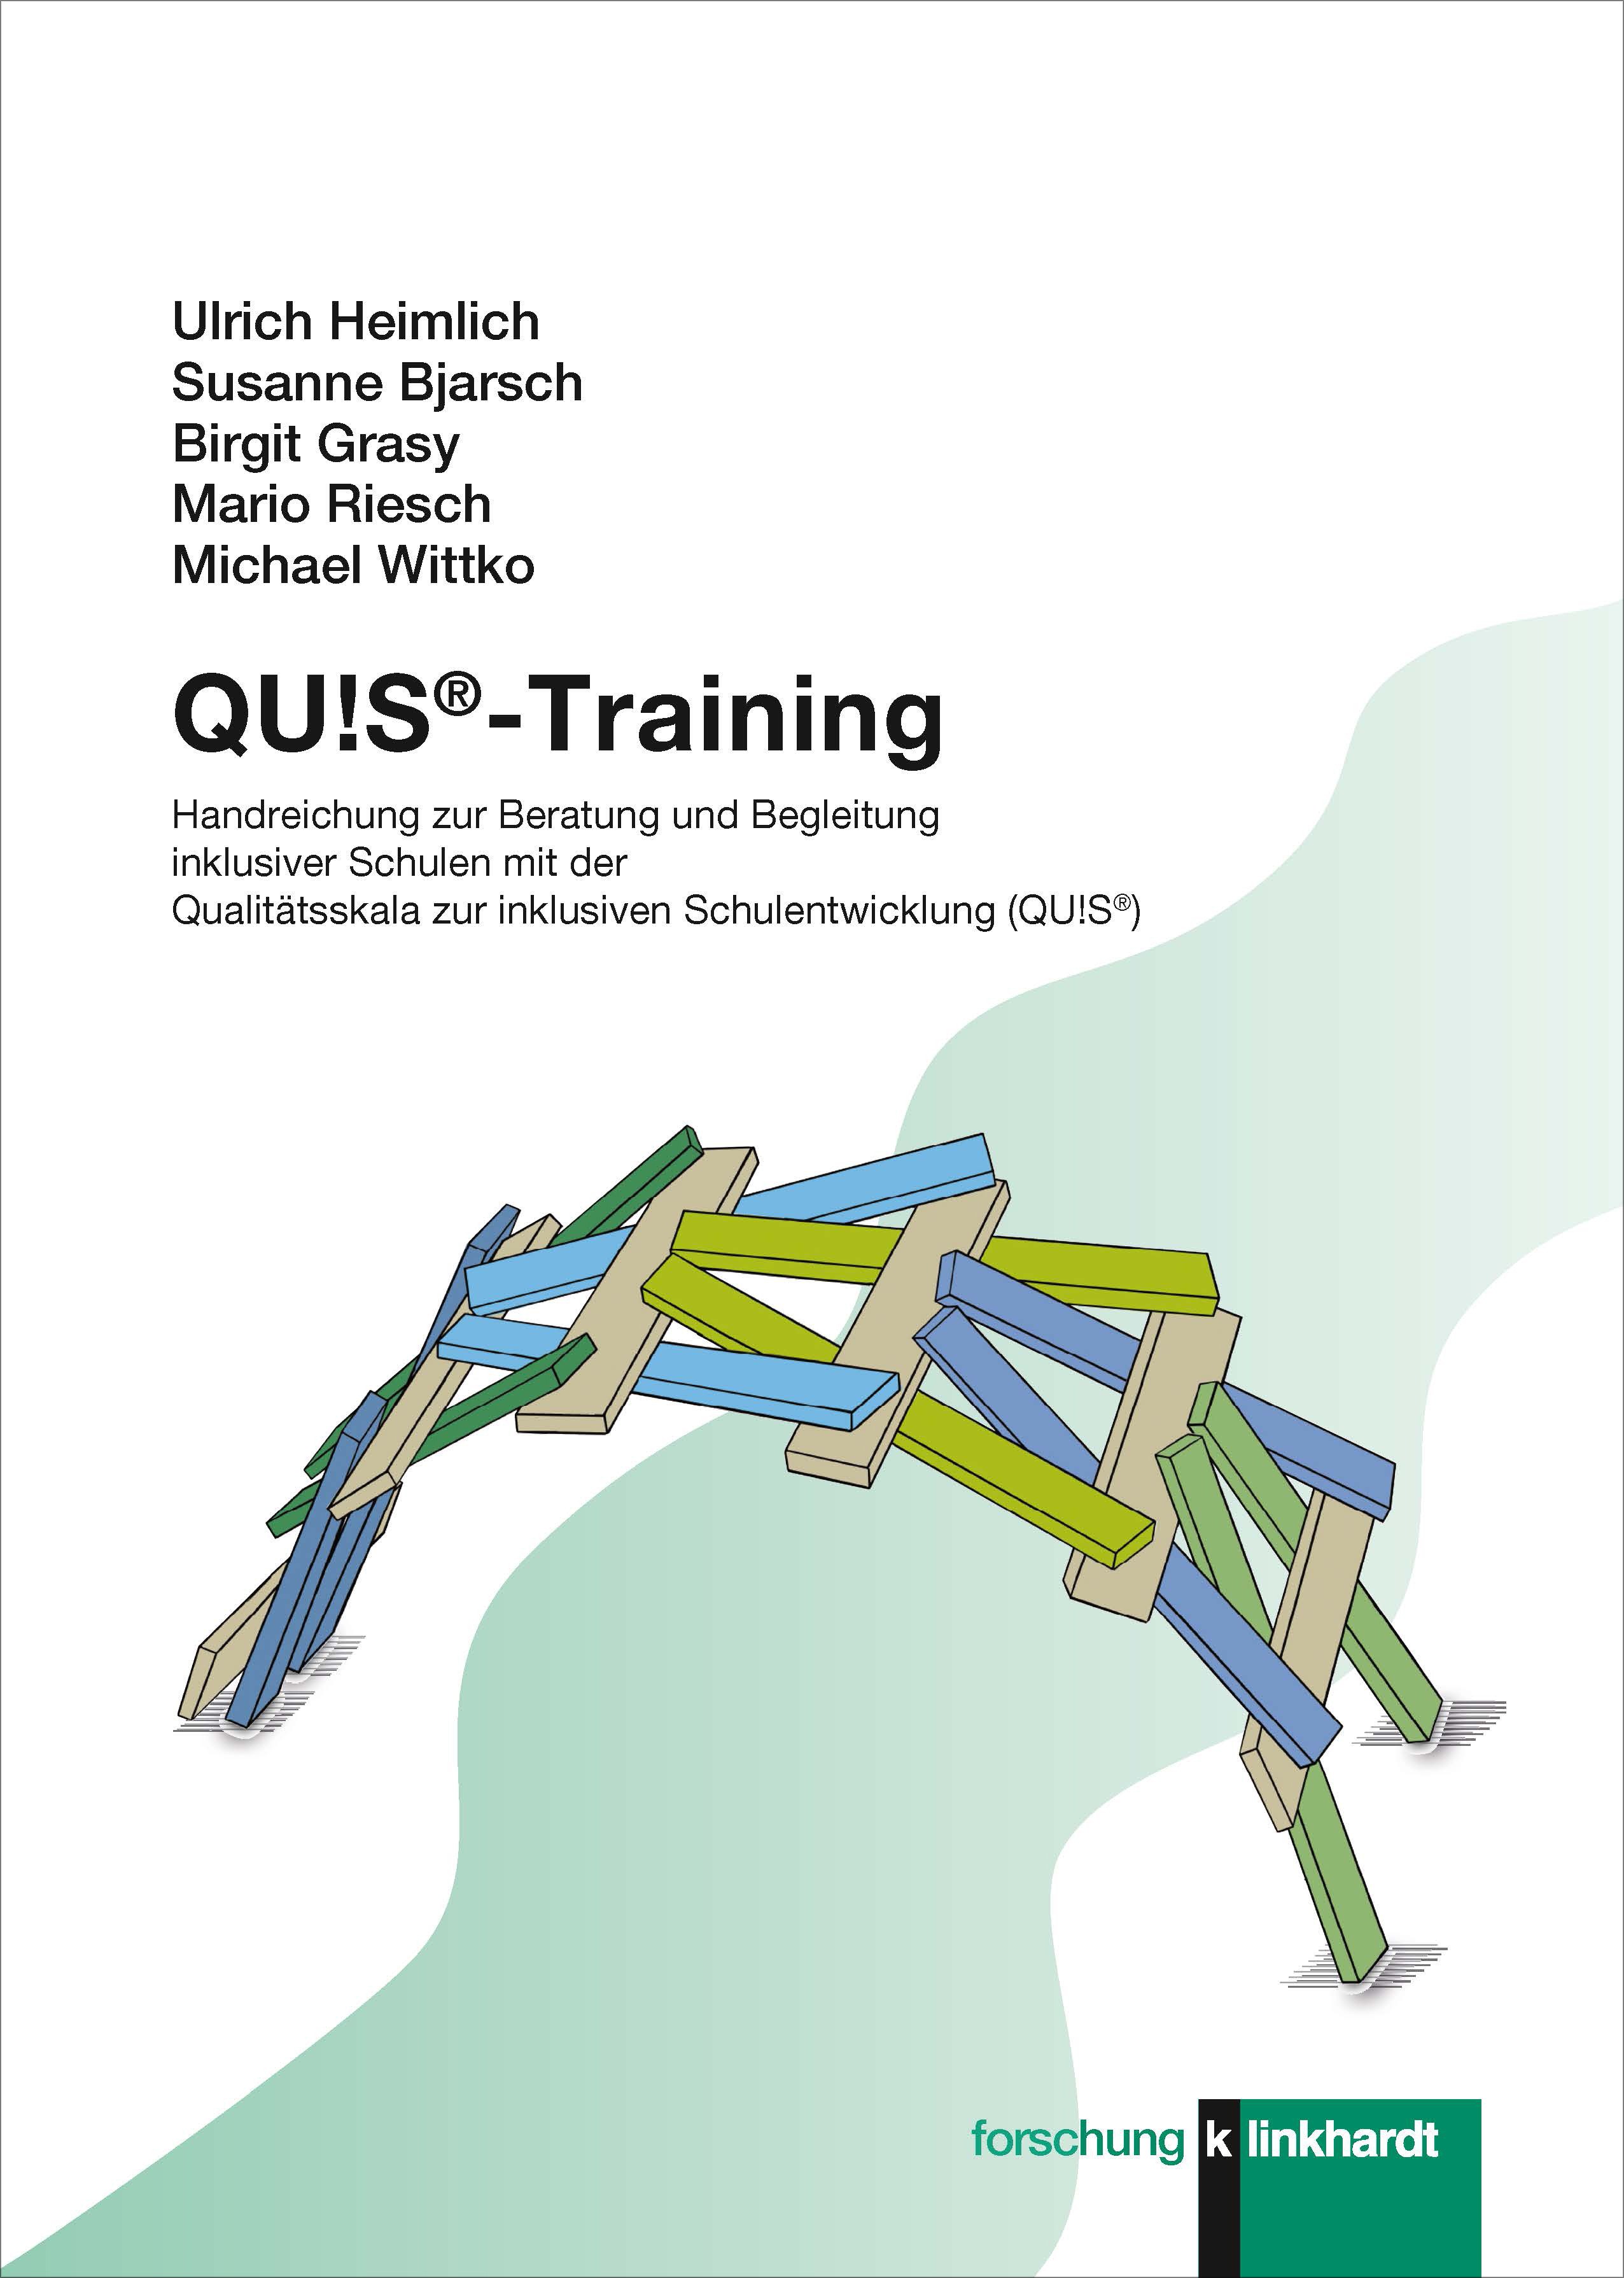 Heimlich, Ulrich  / Bjarsch, Susanne  / Grasy, Birgit  / Riesch, Mario  / Wittko, Michael : QU!S®-Training